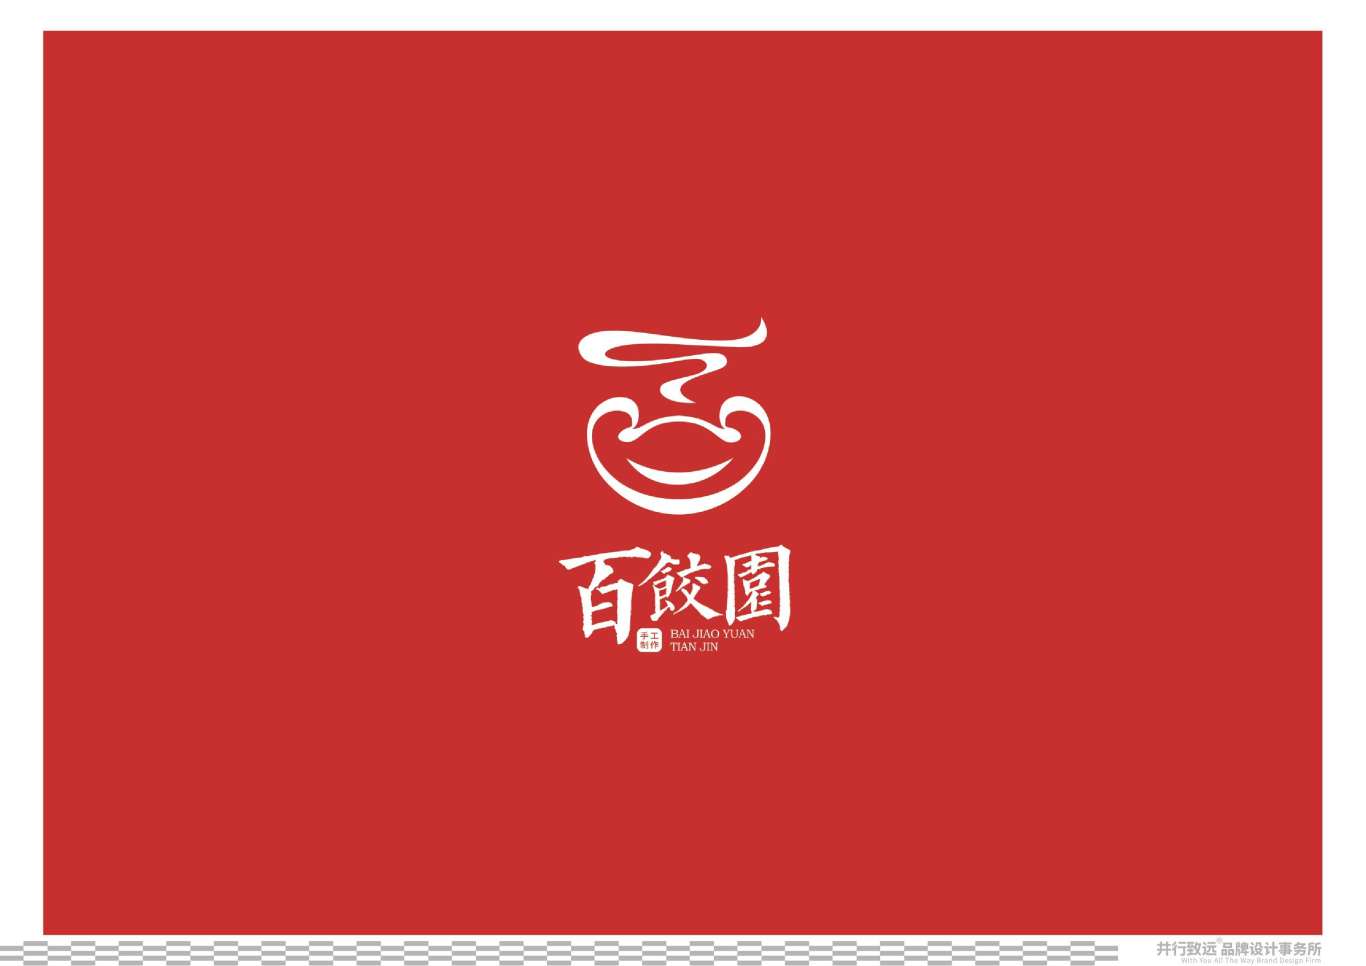 天津百餃園logo升級設計圖28